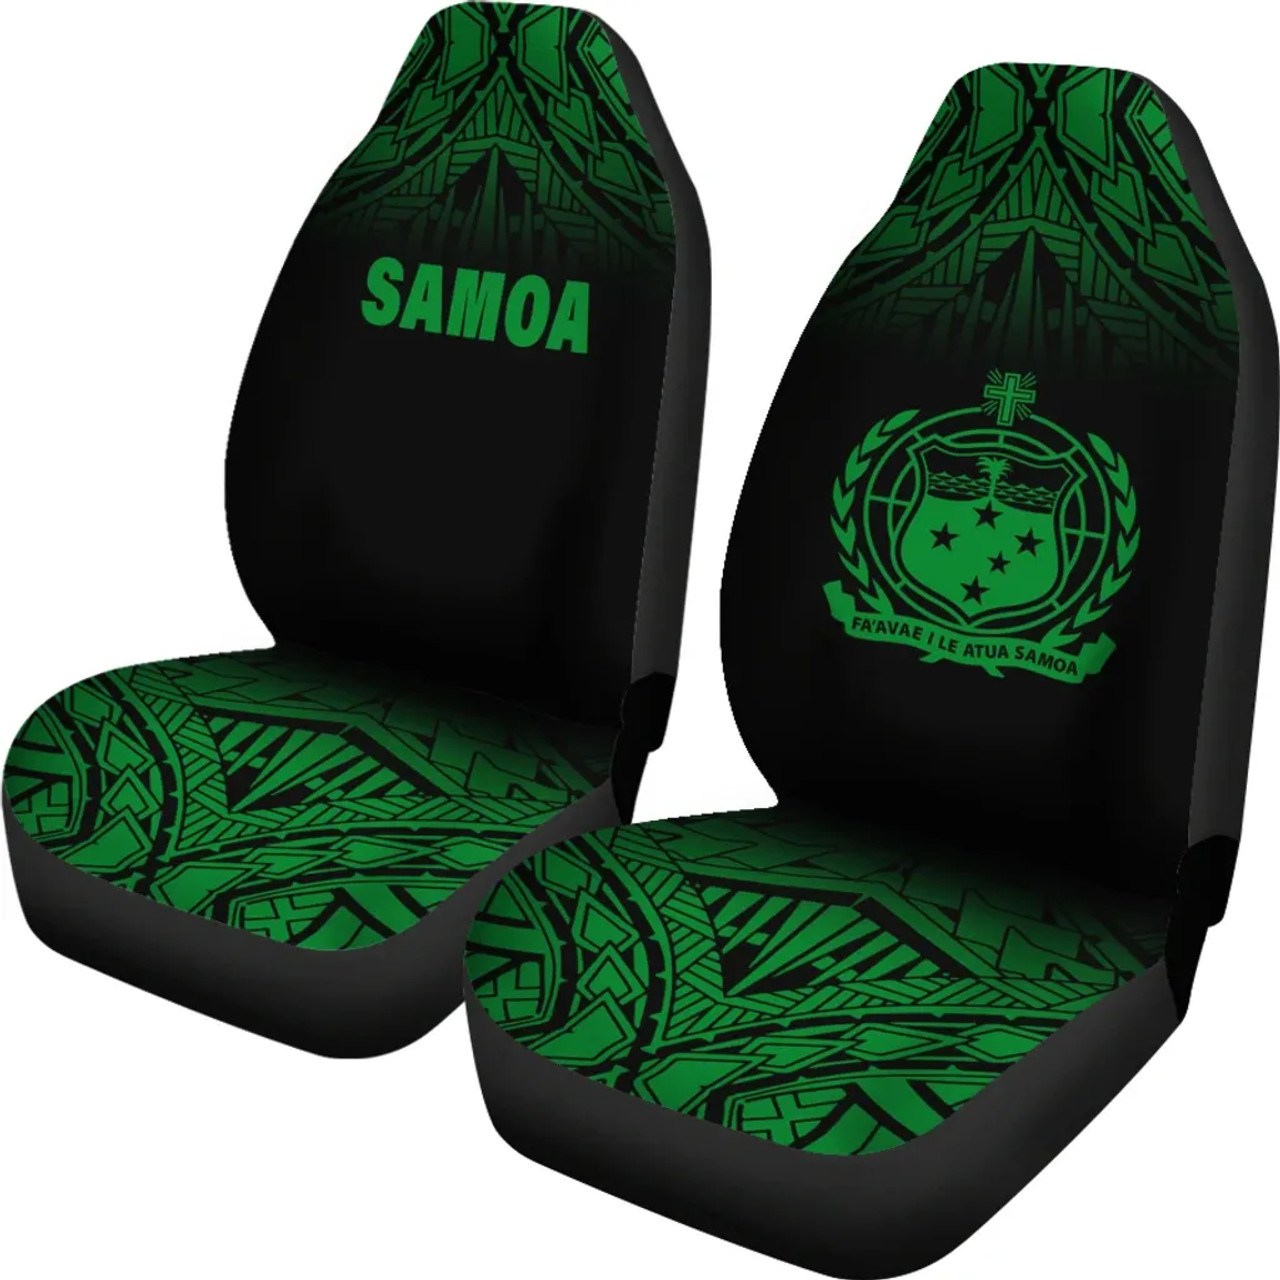 Samoa Car Seat Covers - Samoa Coat Of Arms Polynesian Tattoo Fog Green